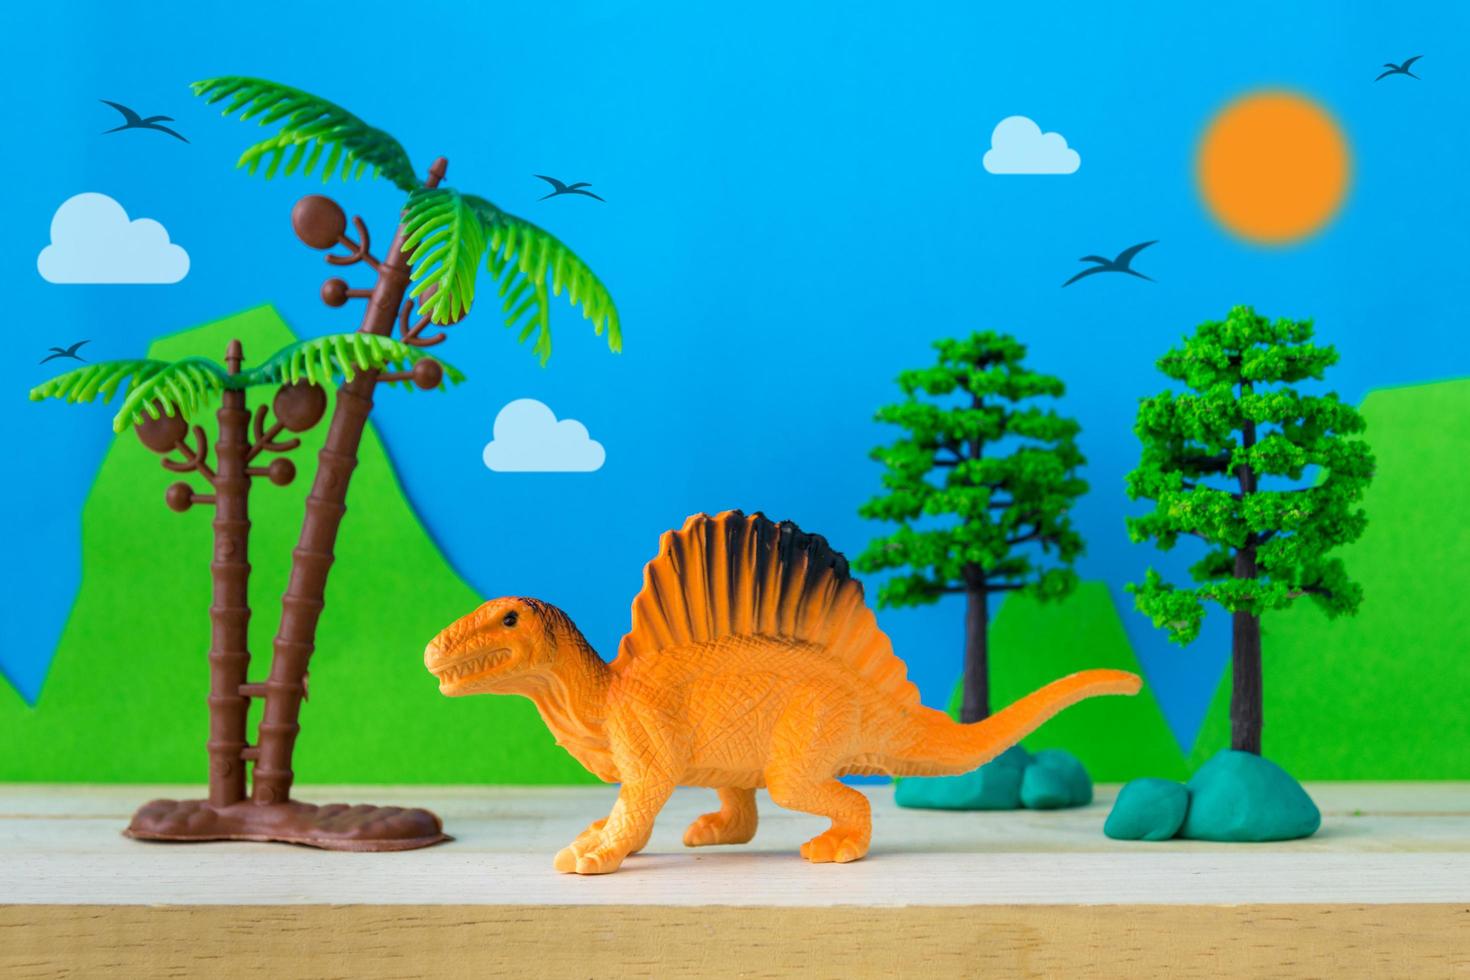 modelo de juguete spinosaurus sobre fondo de modelos salvajes foto